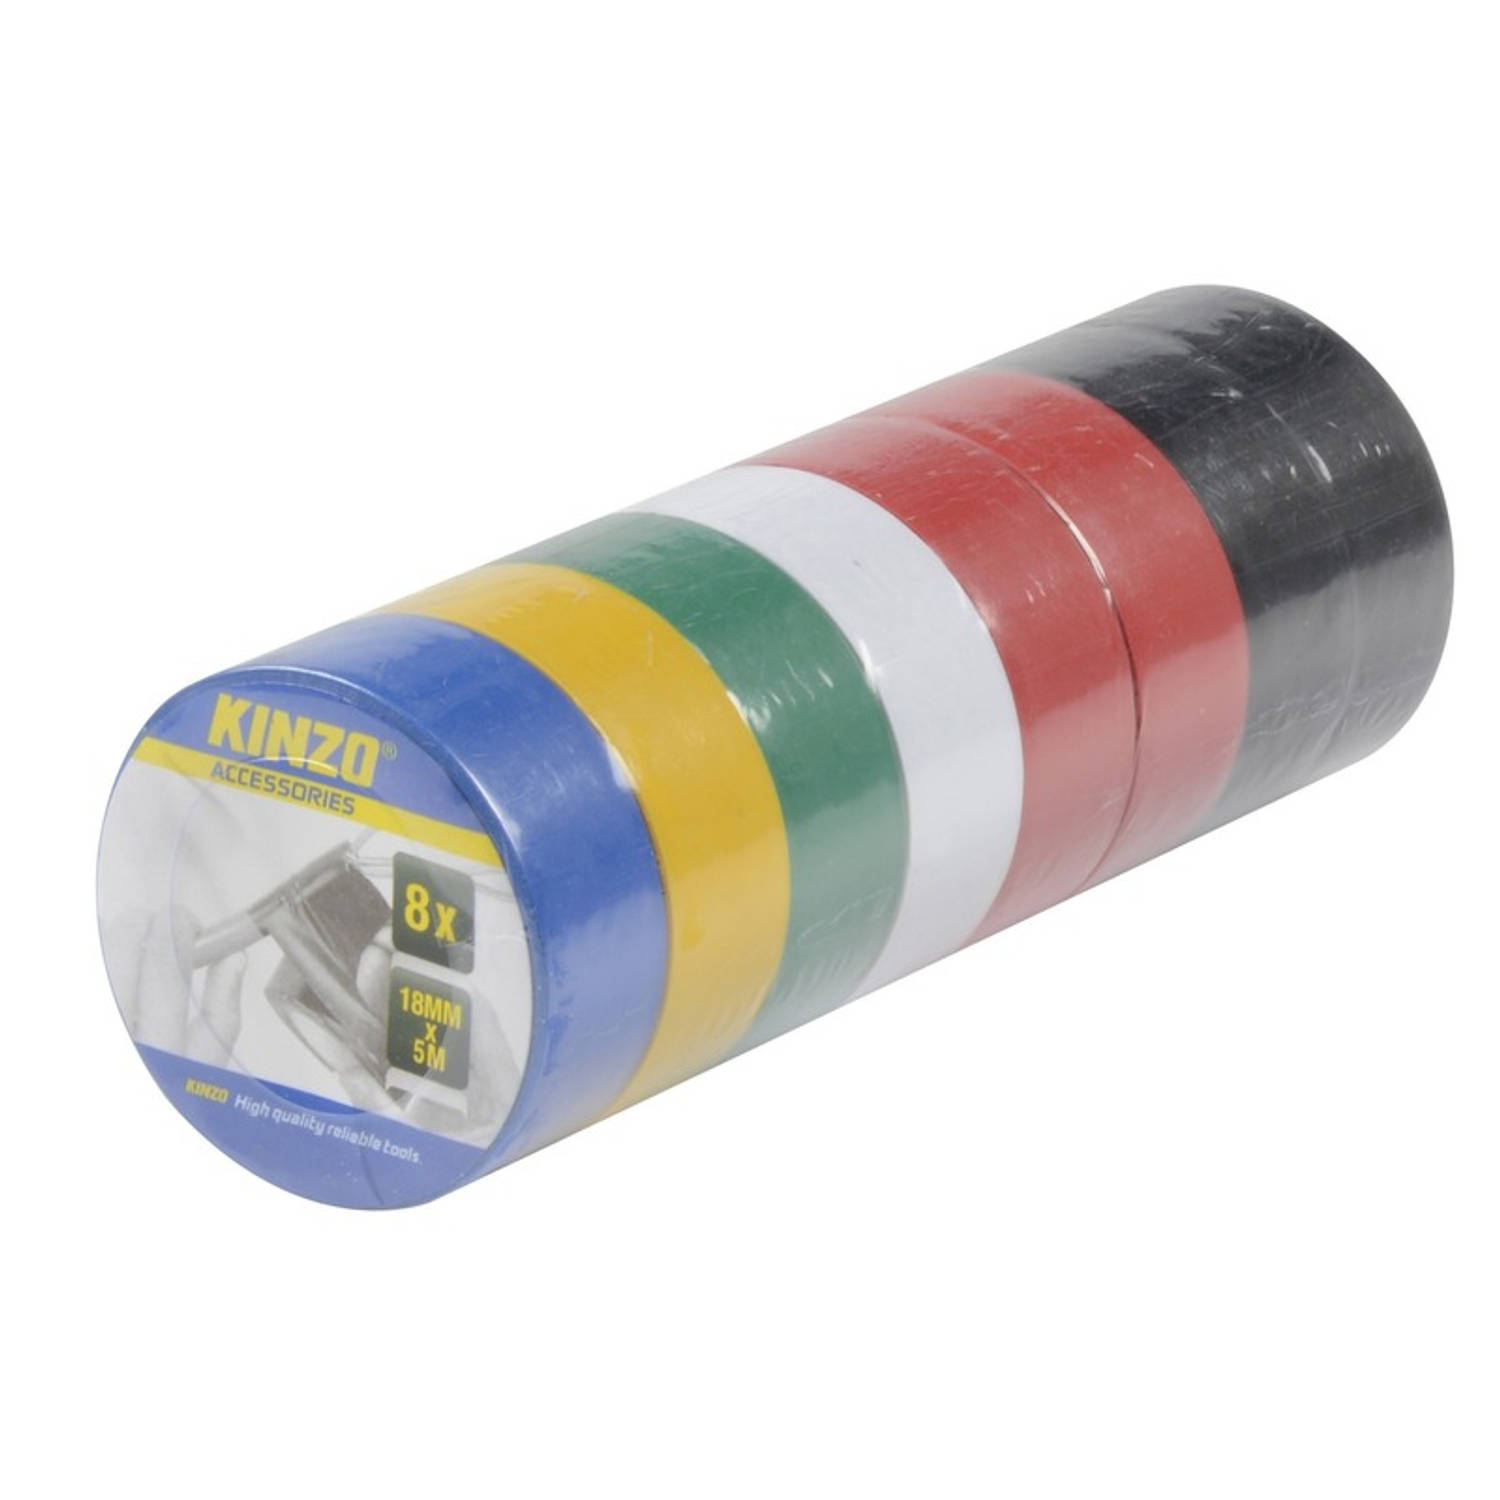 Kinzo 8x Gekleurde Rollen Isolatie Tape - 18 Mm X 5 Meter - Isolerende Tape